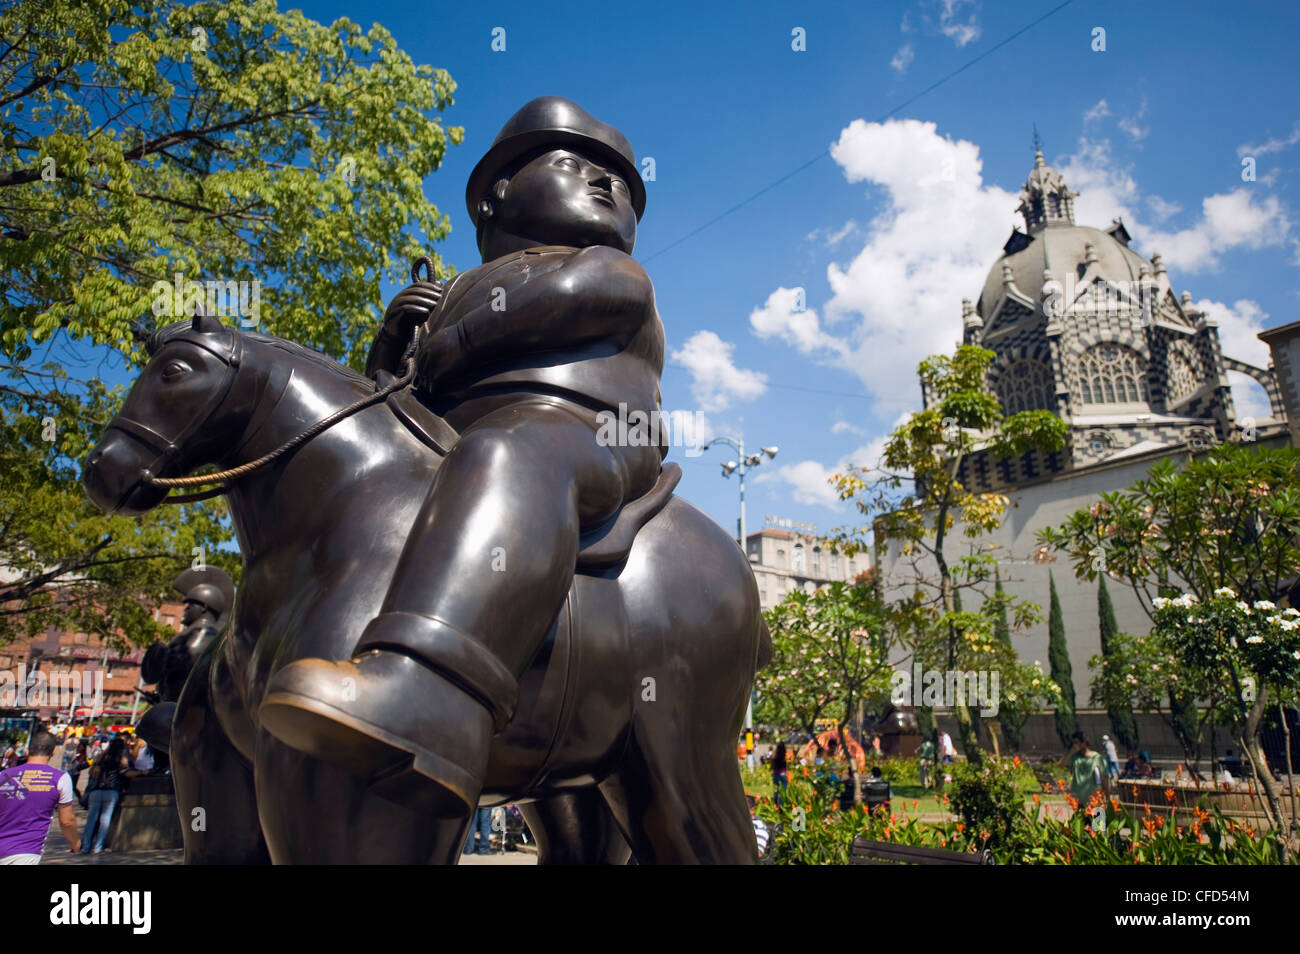 Sculptures de Fernando Botero, Plazoleta de las Esculturas, Medellin, Colombie, Amérique du Sud Banque D'Images